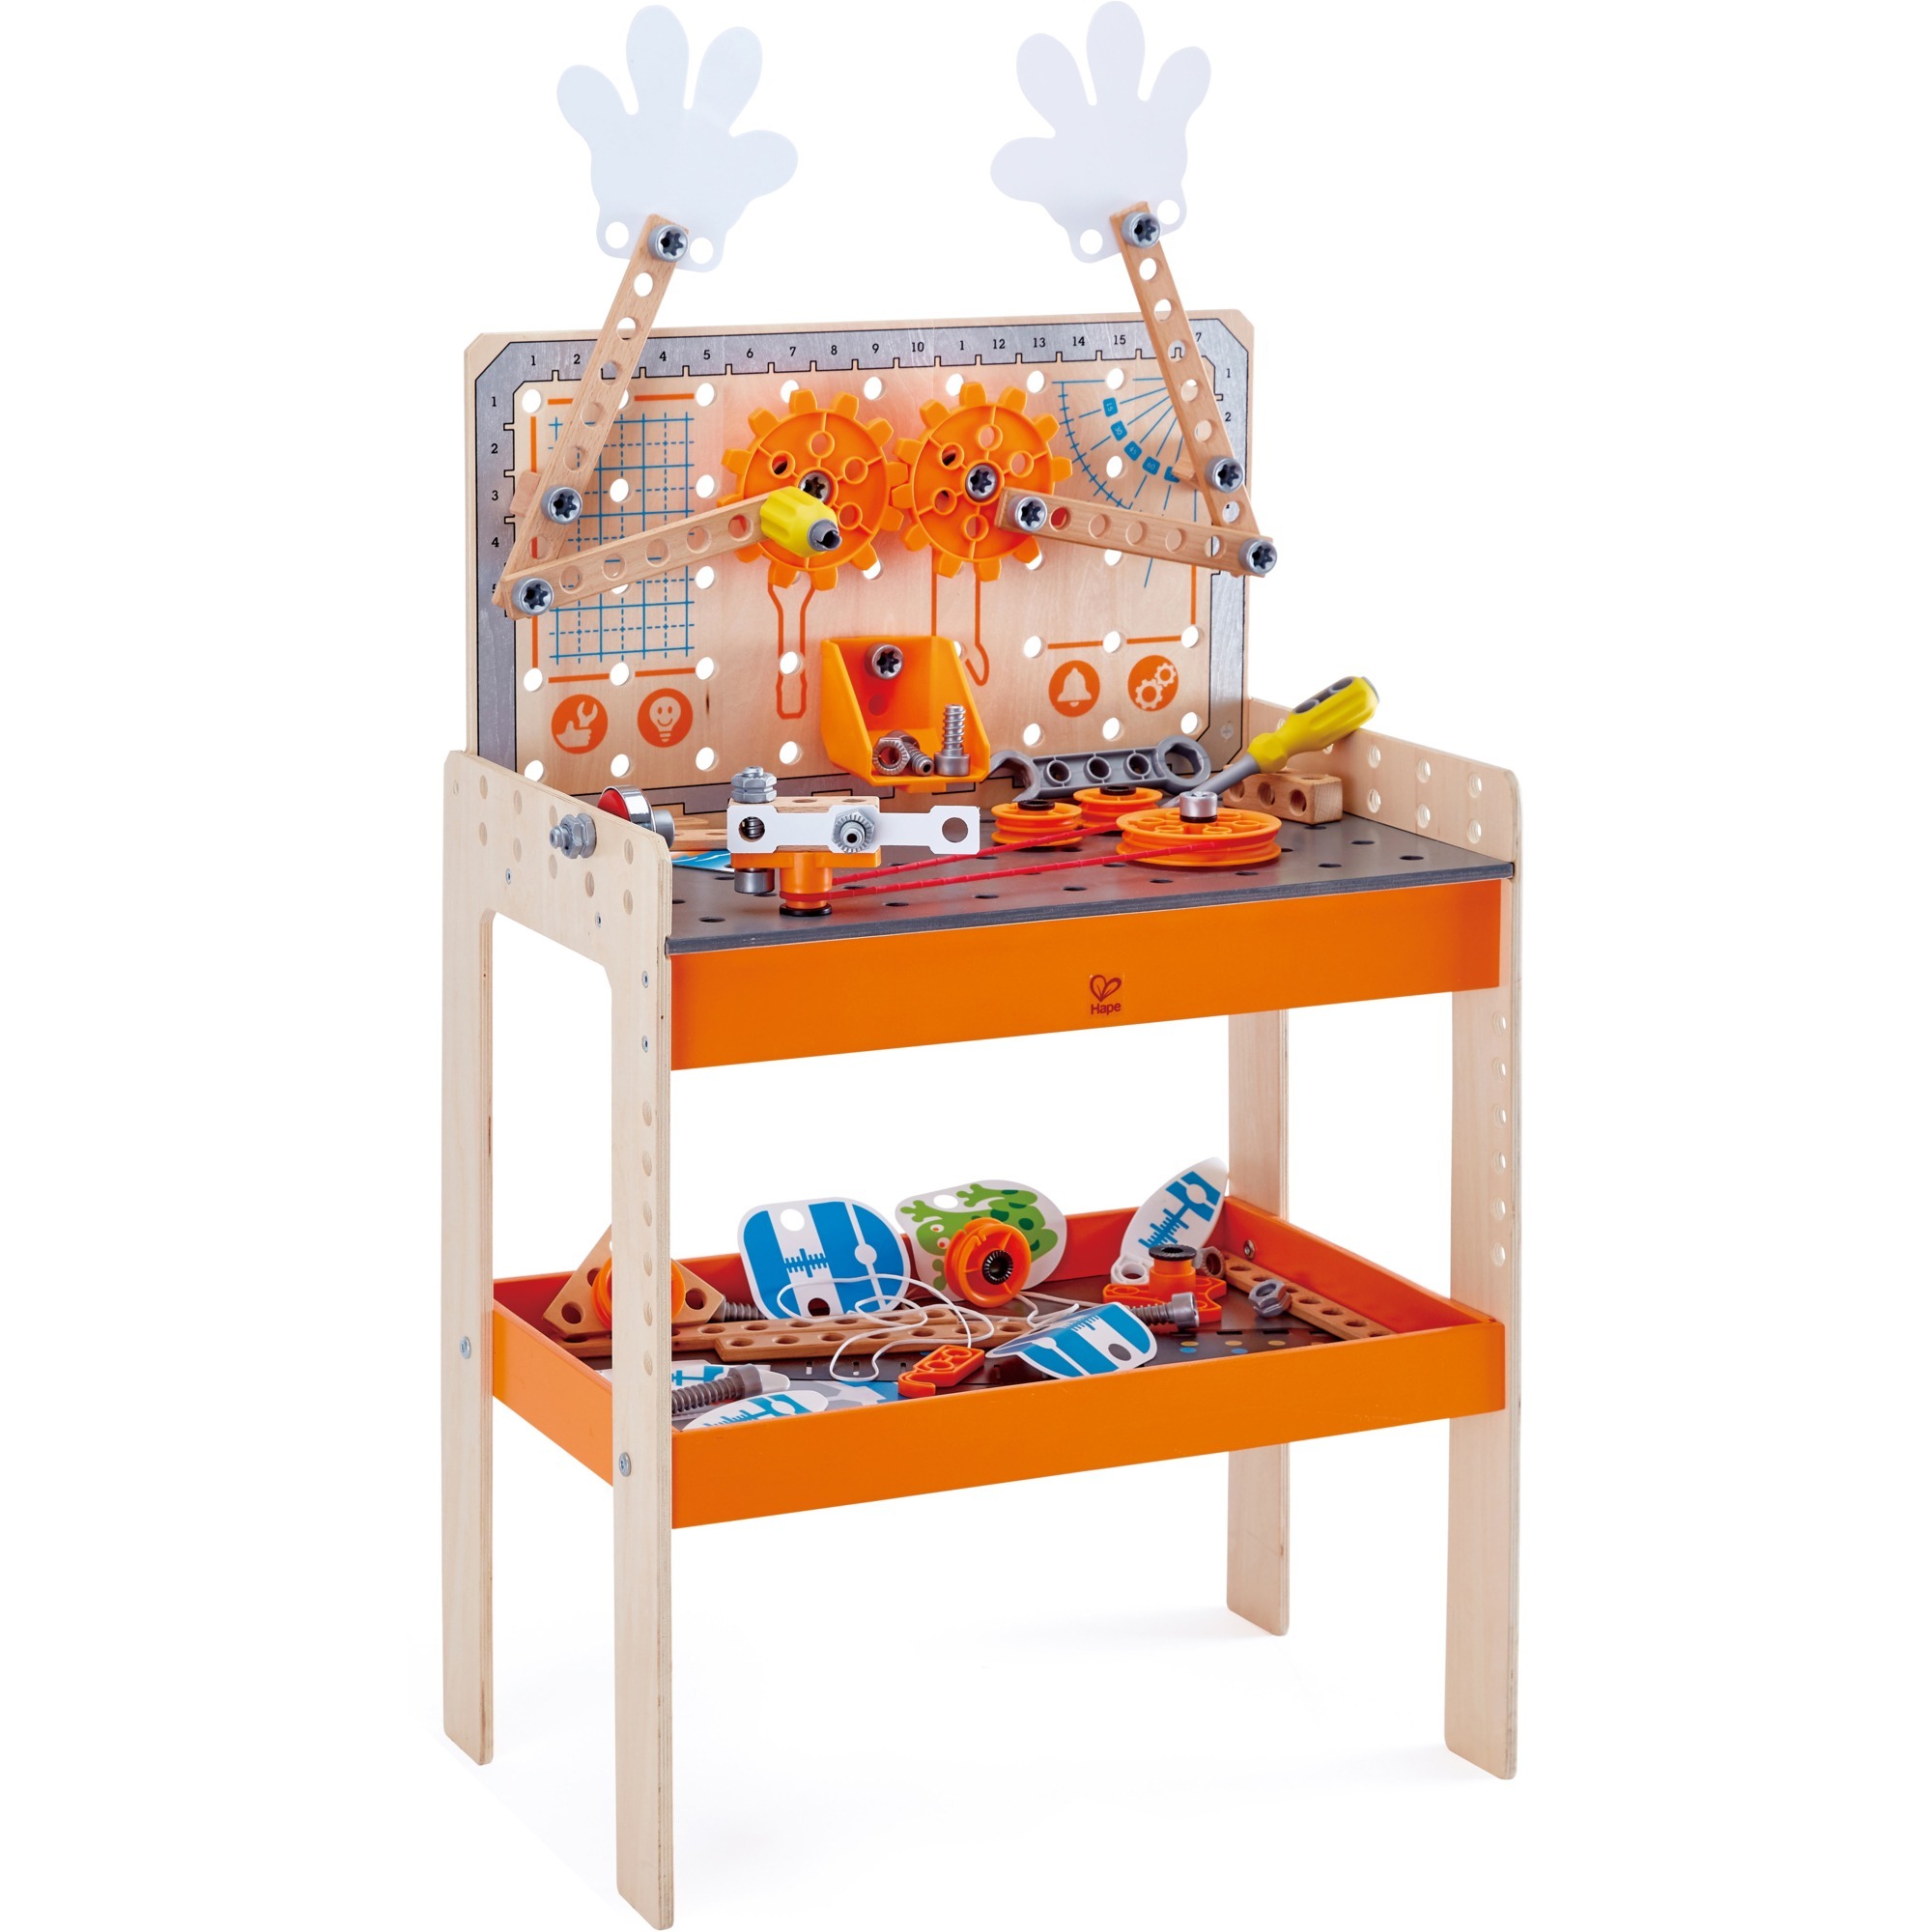 Image of Alternate - Tüftler Werkbank, Kinderwerkzeug online einkaufen bei Alternate